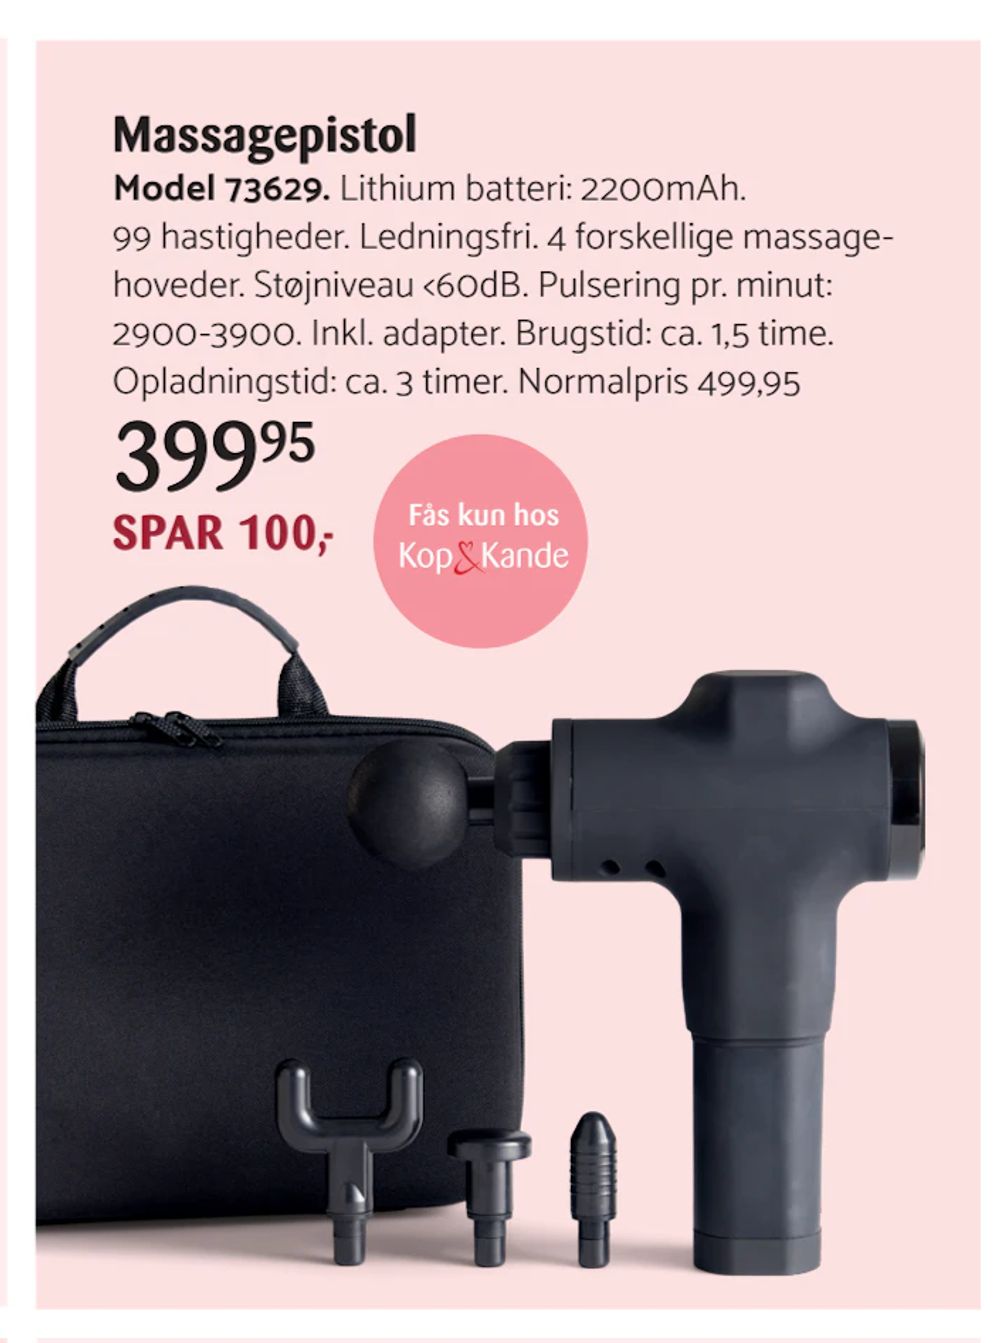 Tilbud på Massagepistol fra Kop & Kande til 399,95 kr.